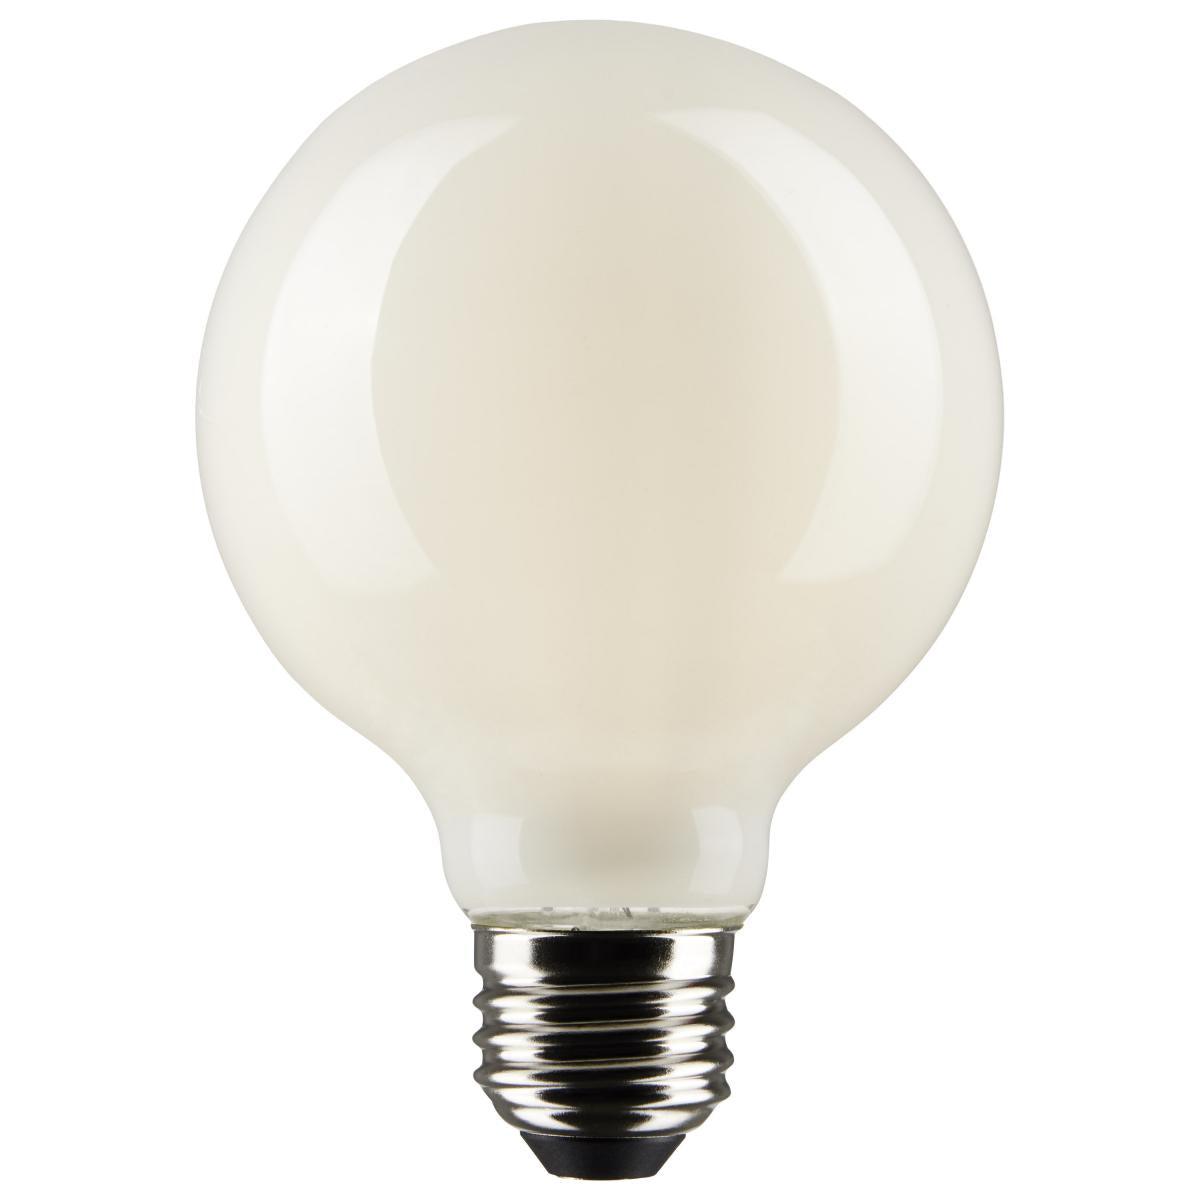 G25 LED Globe Bulb, 5 Watt, 350 Lumens, 2700K, E26 Medium Base, Frosted Finish, Pack Of 2